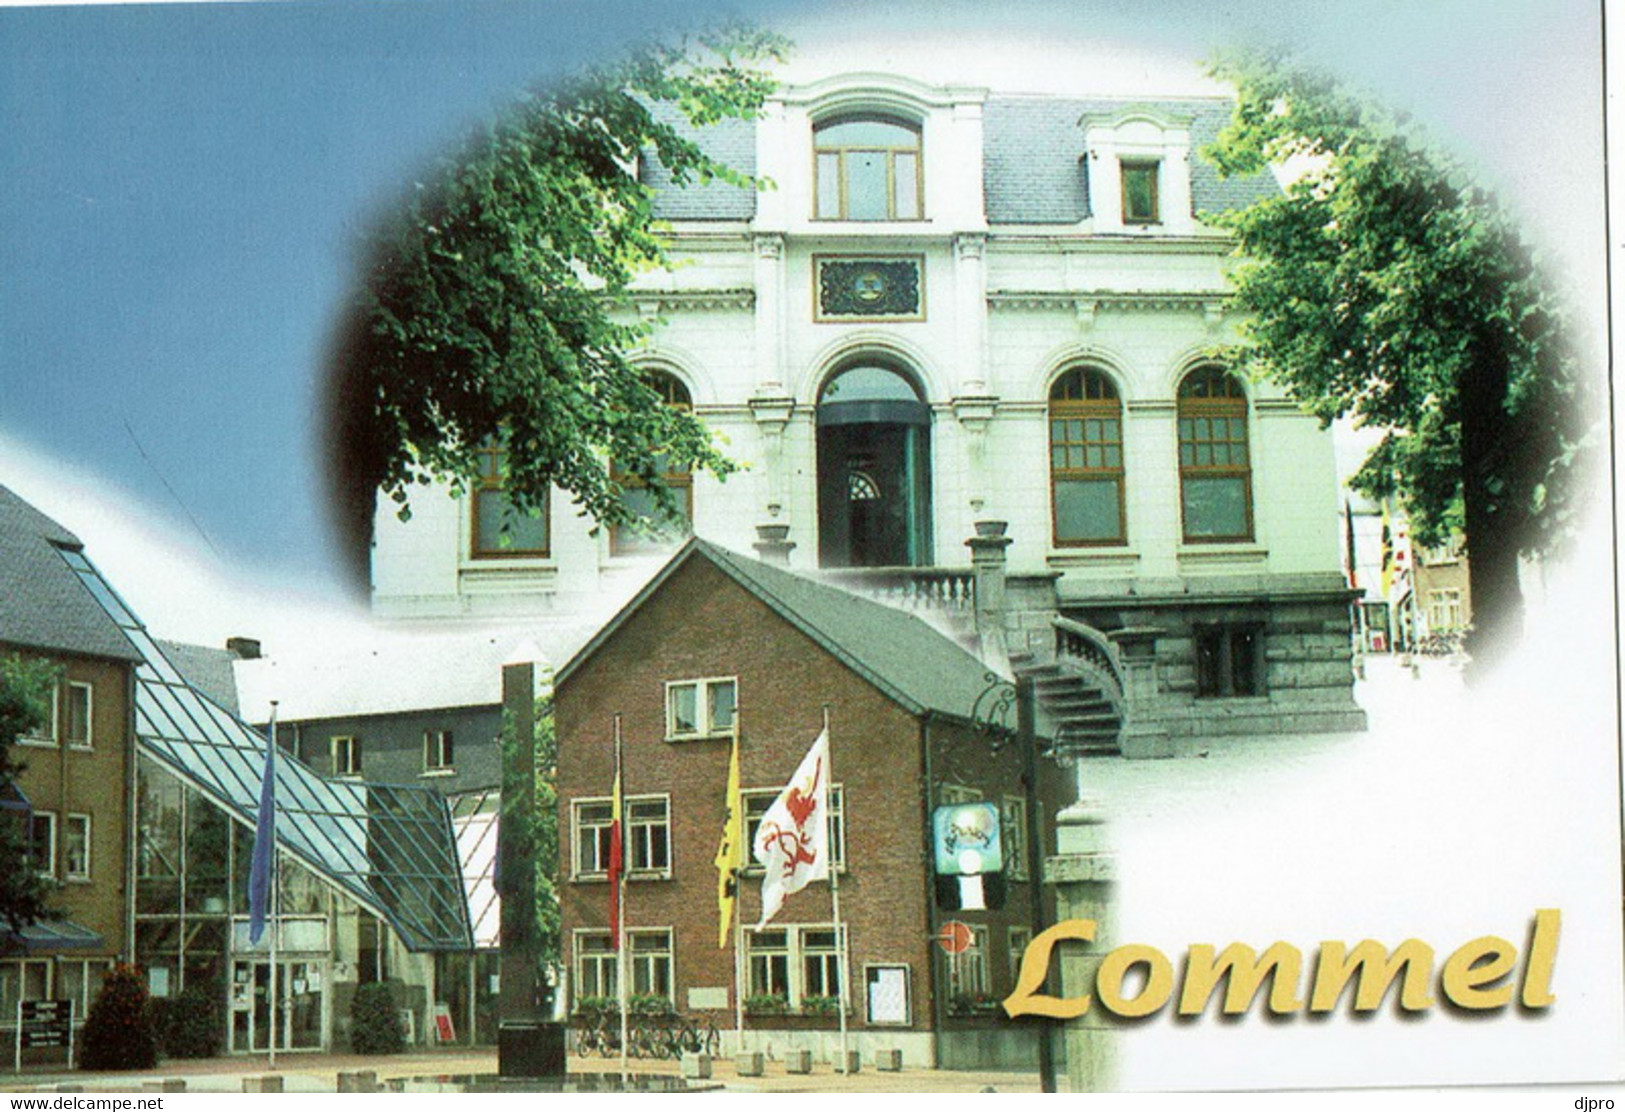 Lommel - Lommel